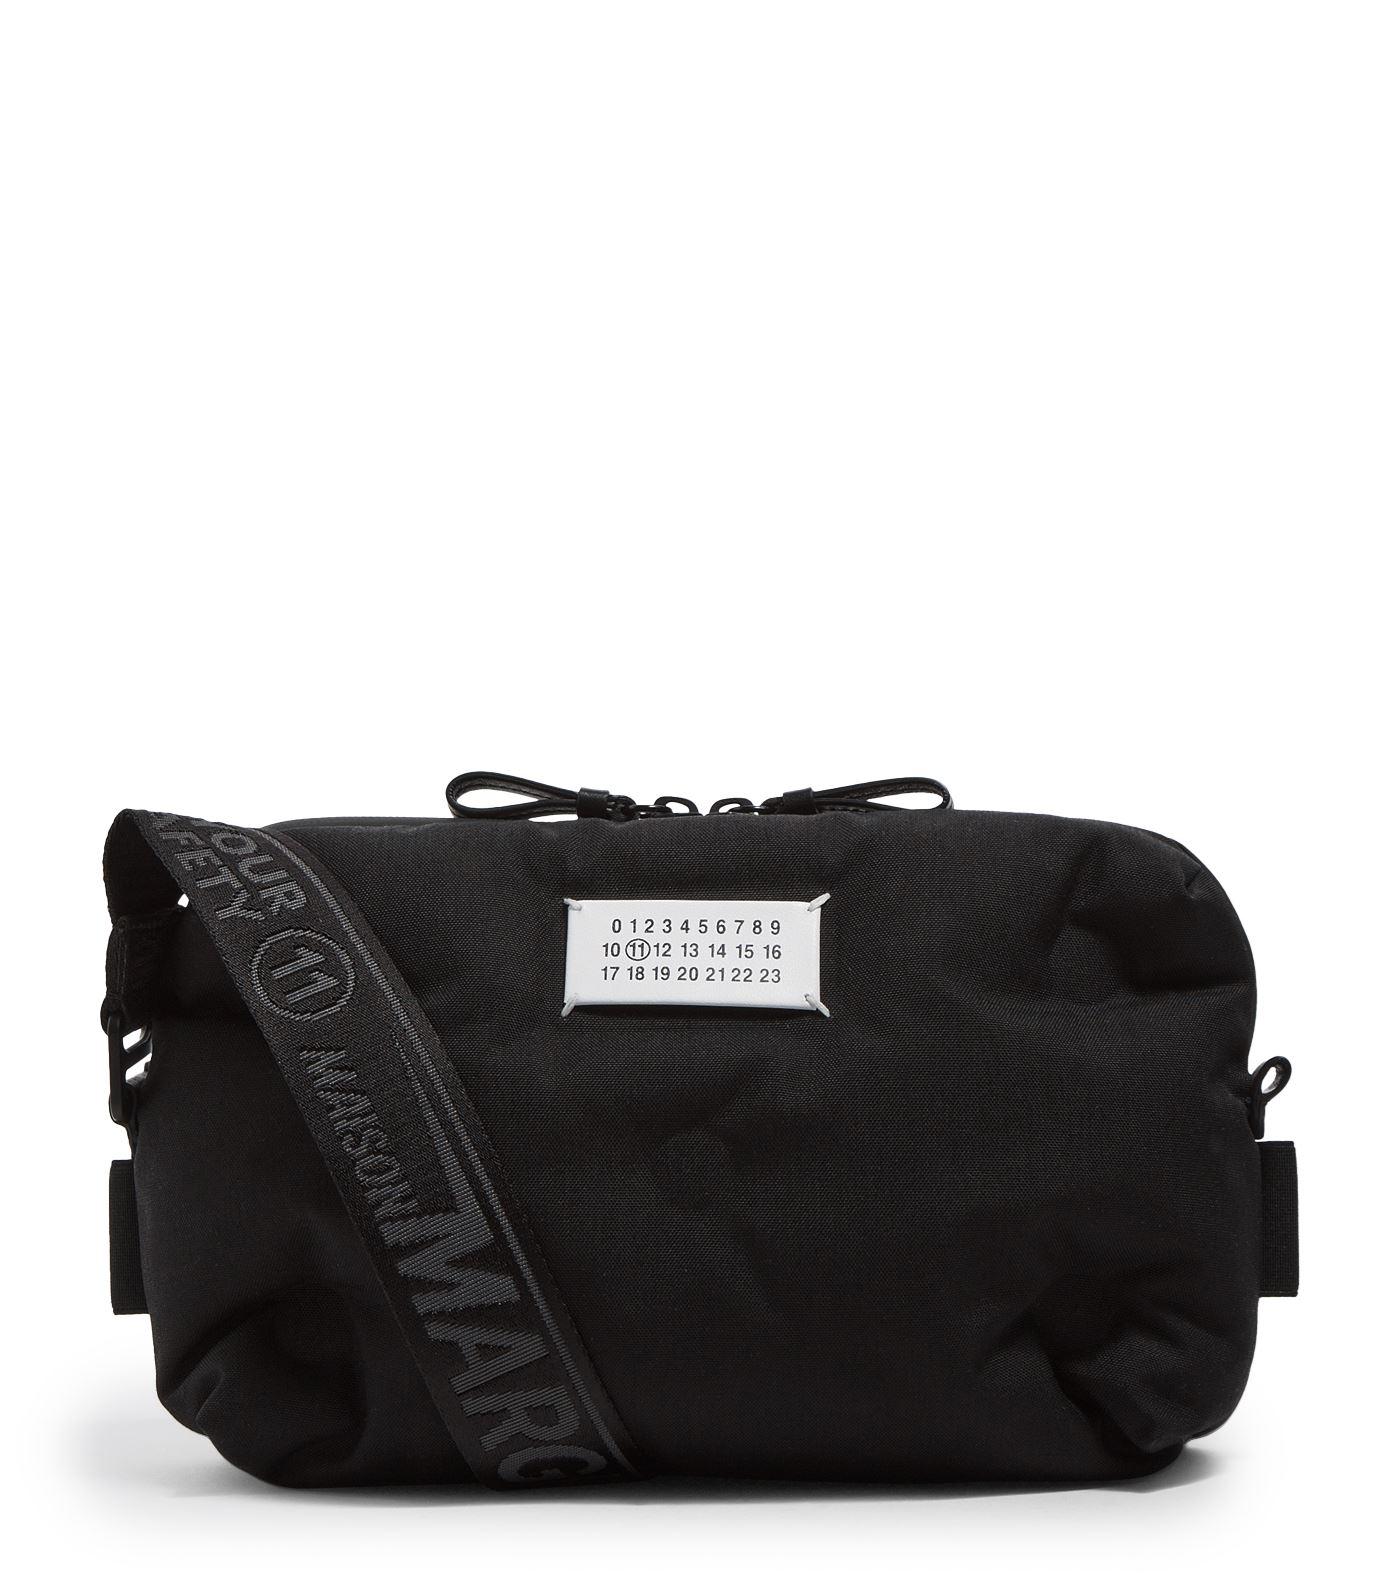 Maison Margiela Mini Grand Slam Bag in Black for Men - Lyst